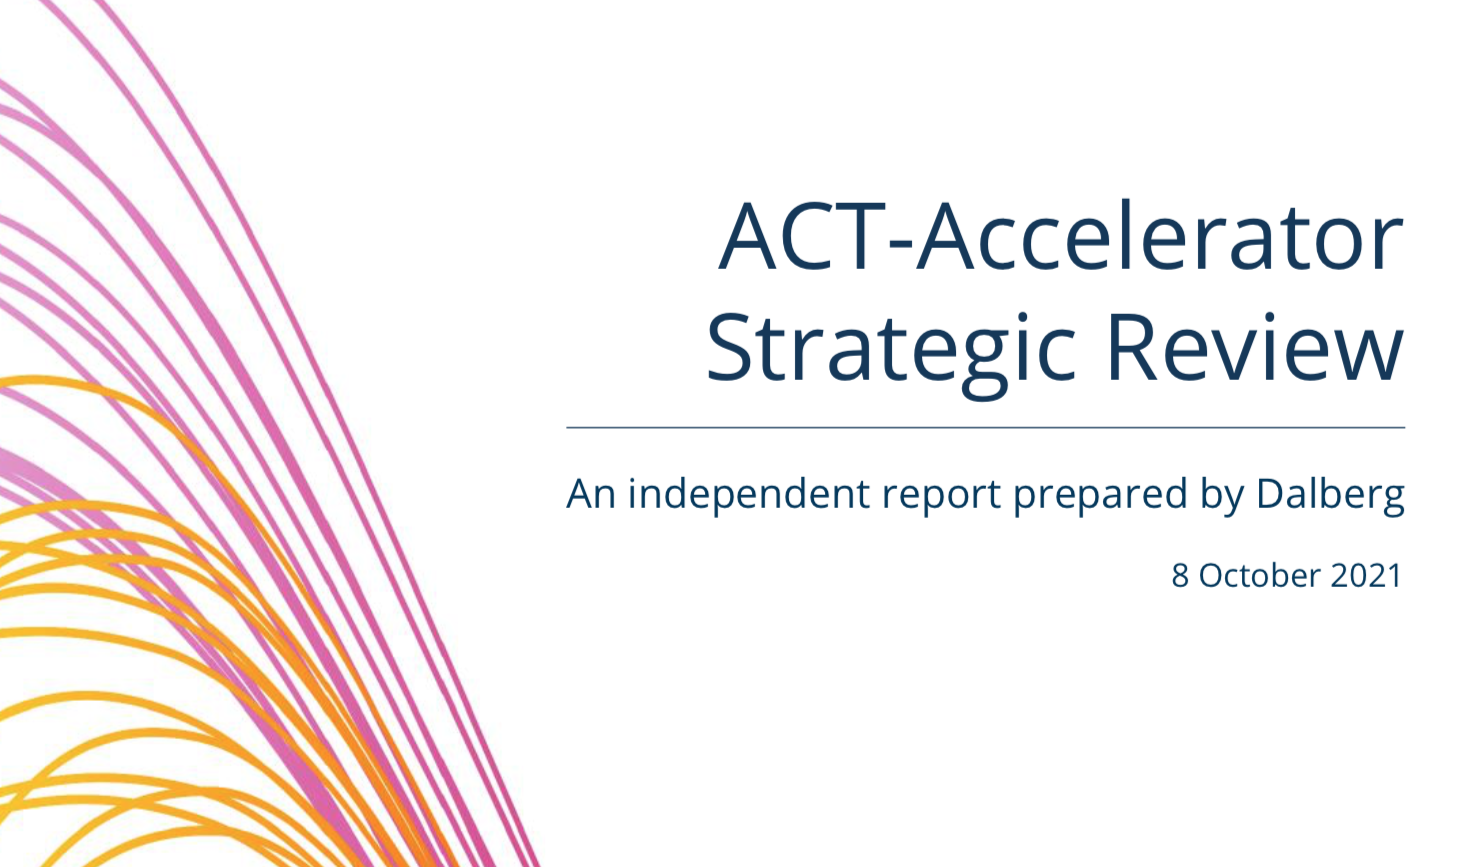 Publicación de la Revisión Estratégica de ACT-Accelerator